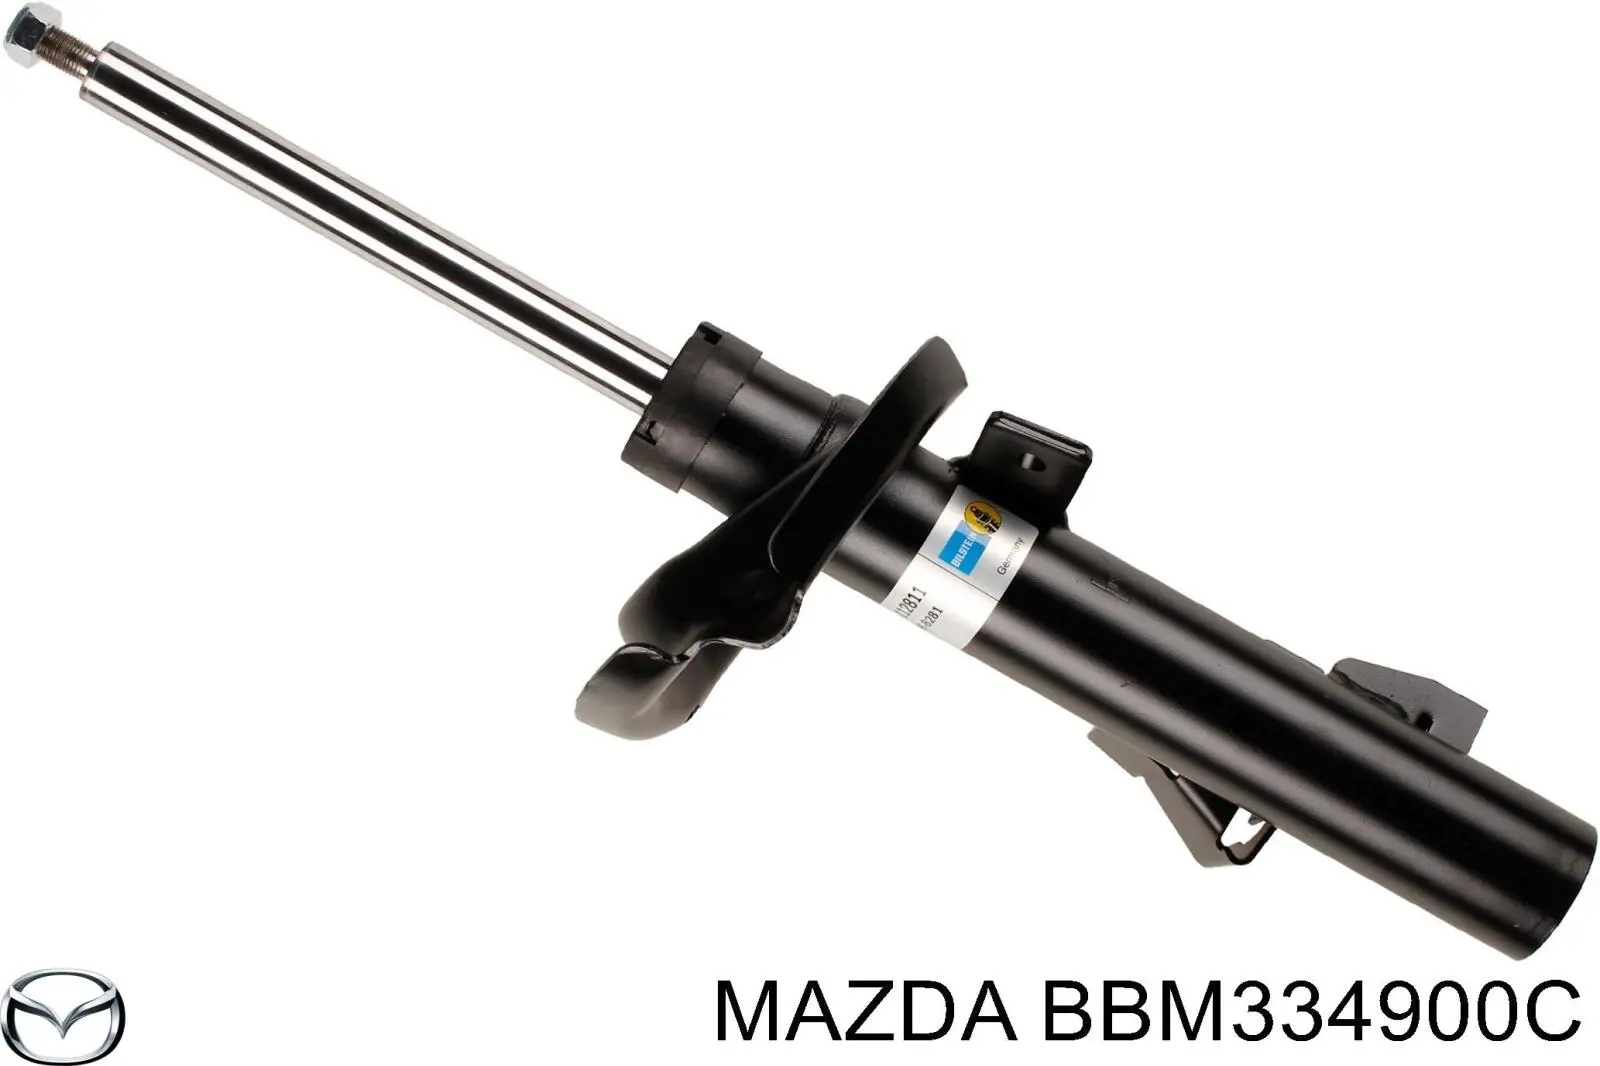 BBM334900C Mazda amortiguador delantero izquierdo